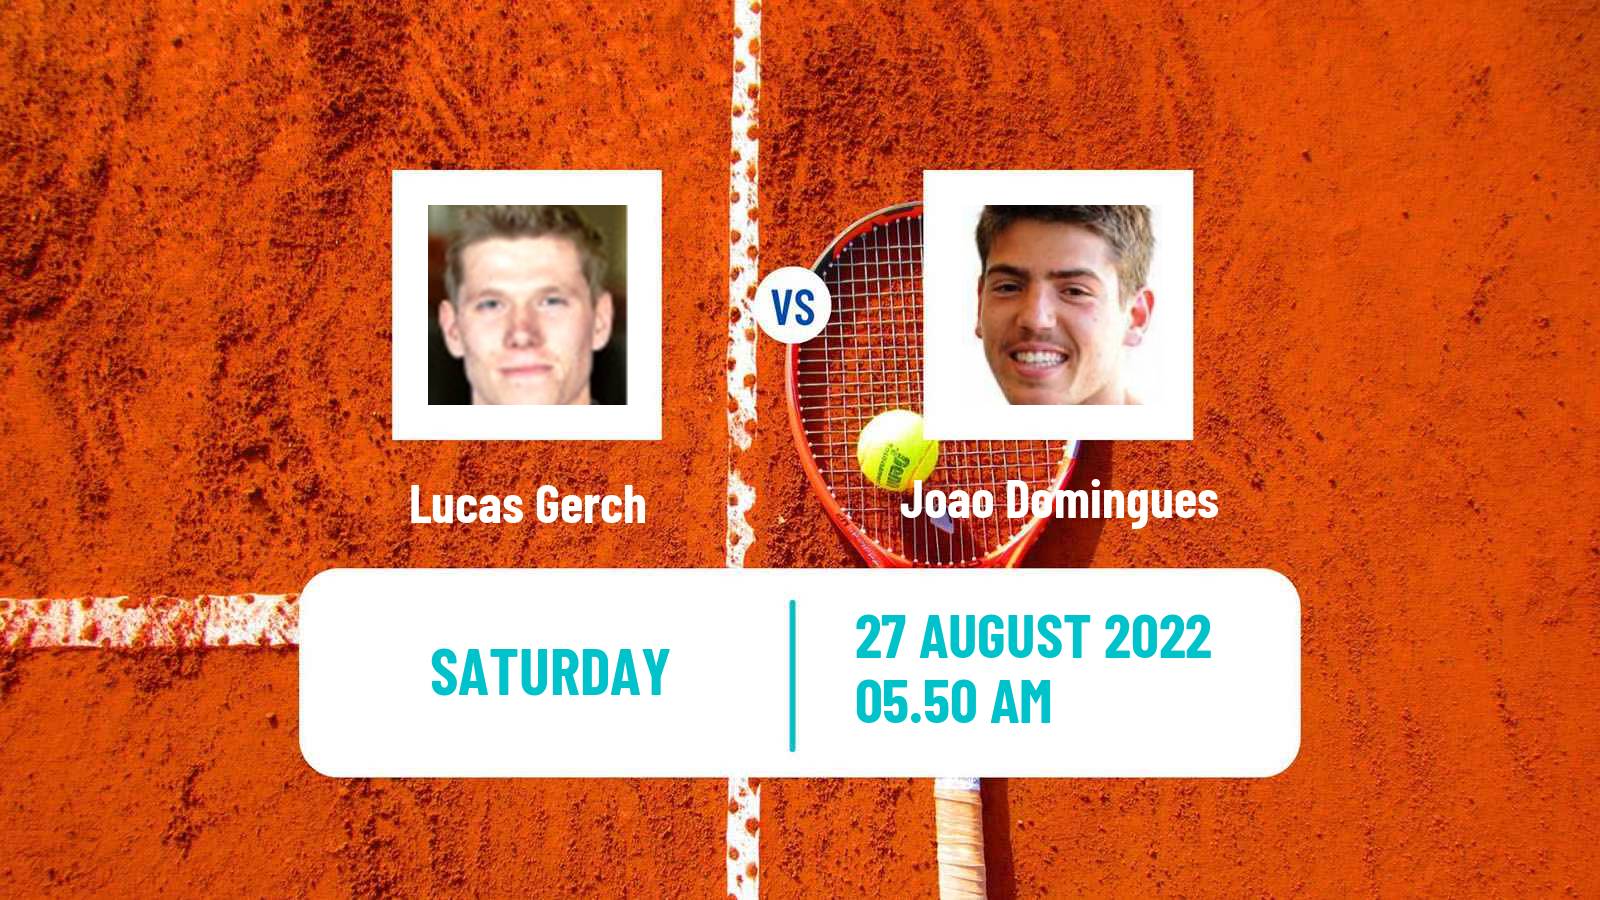 Tennis ATP Challenger Lucas Gerch - Joao Domingues